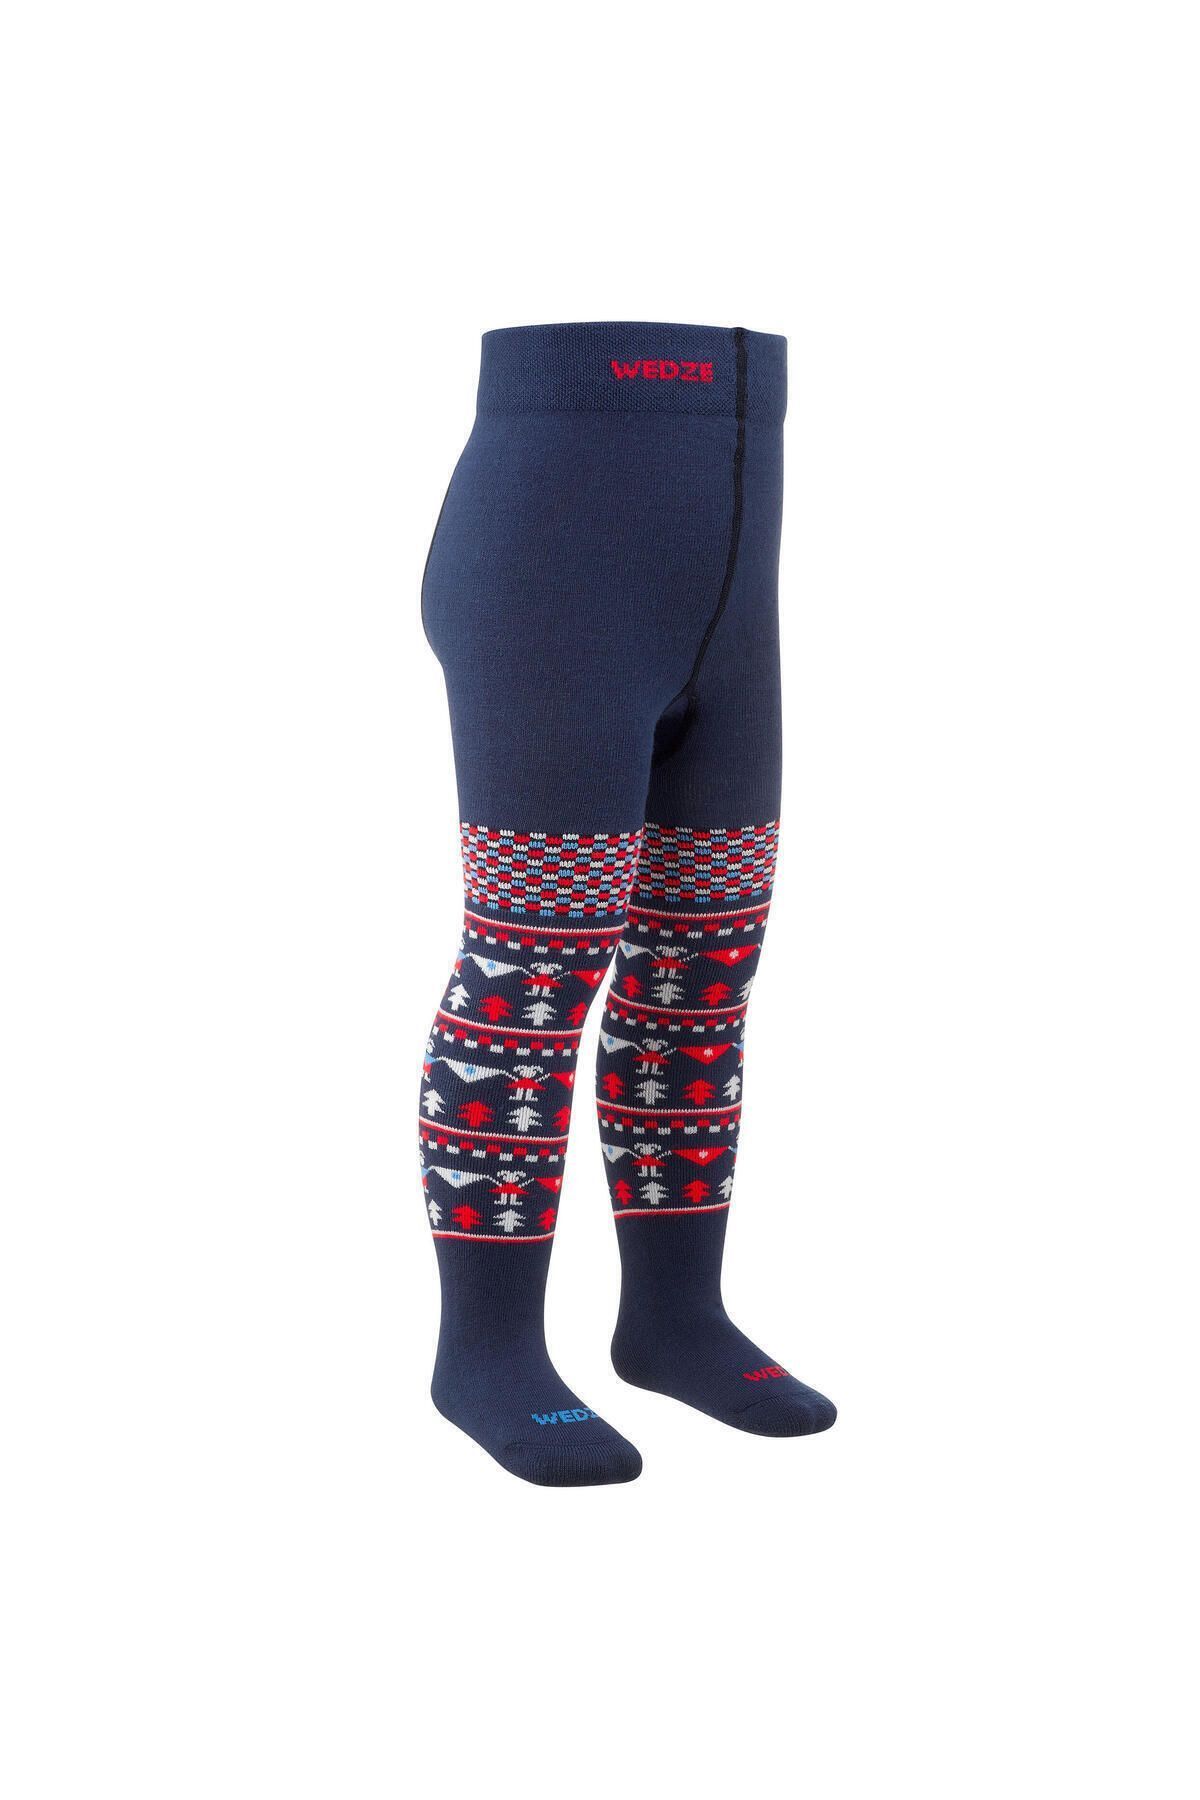 Decathlon Wedze Çocuk Kayak Çorabı - Mavi